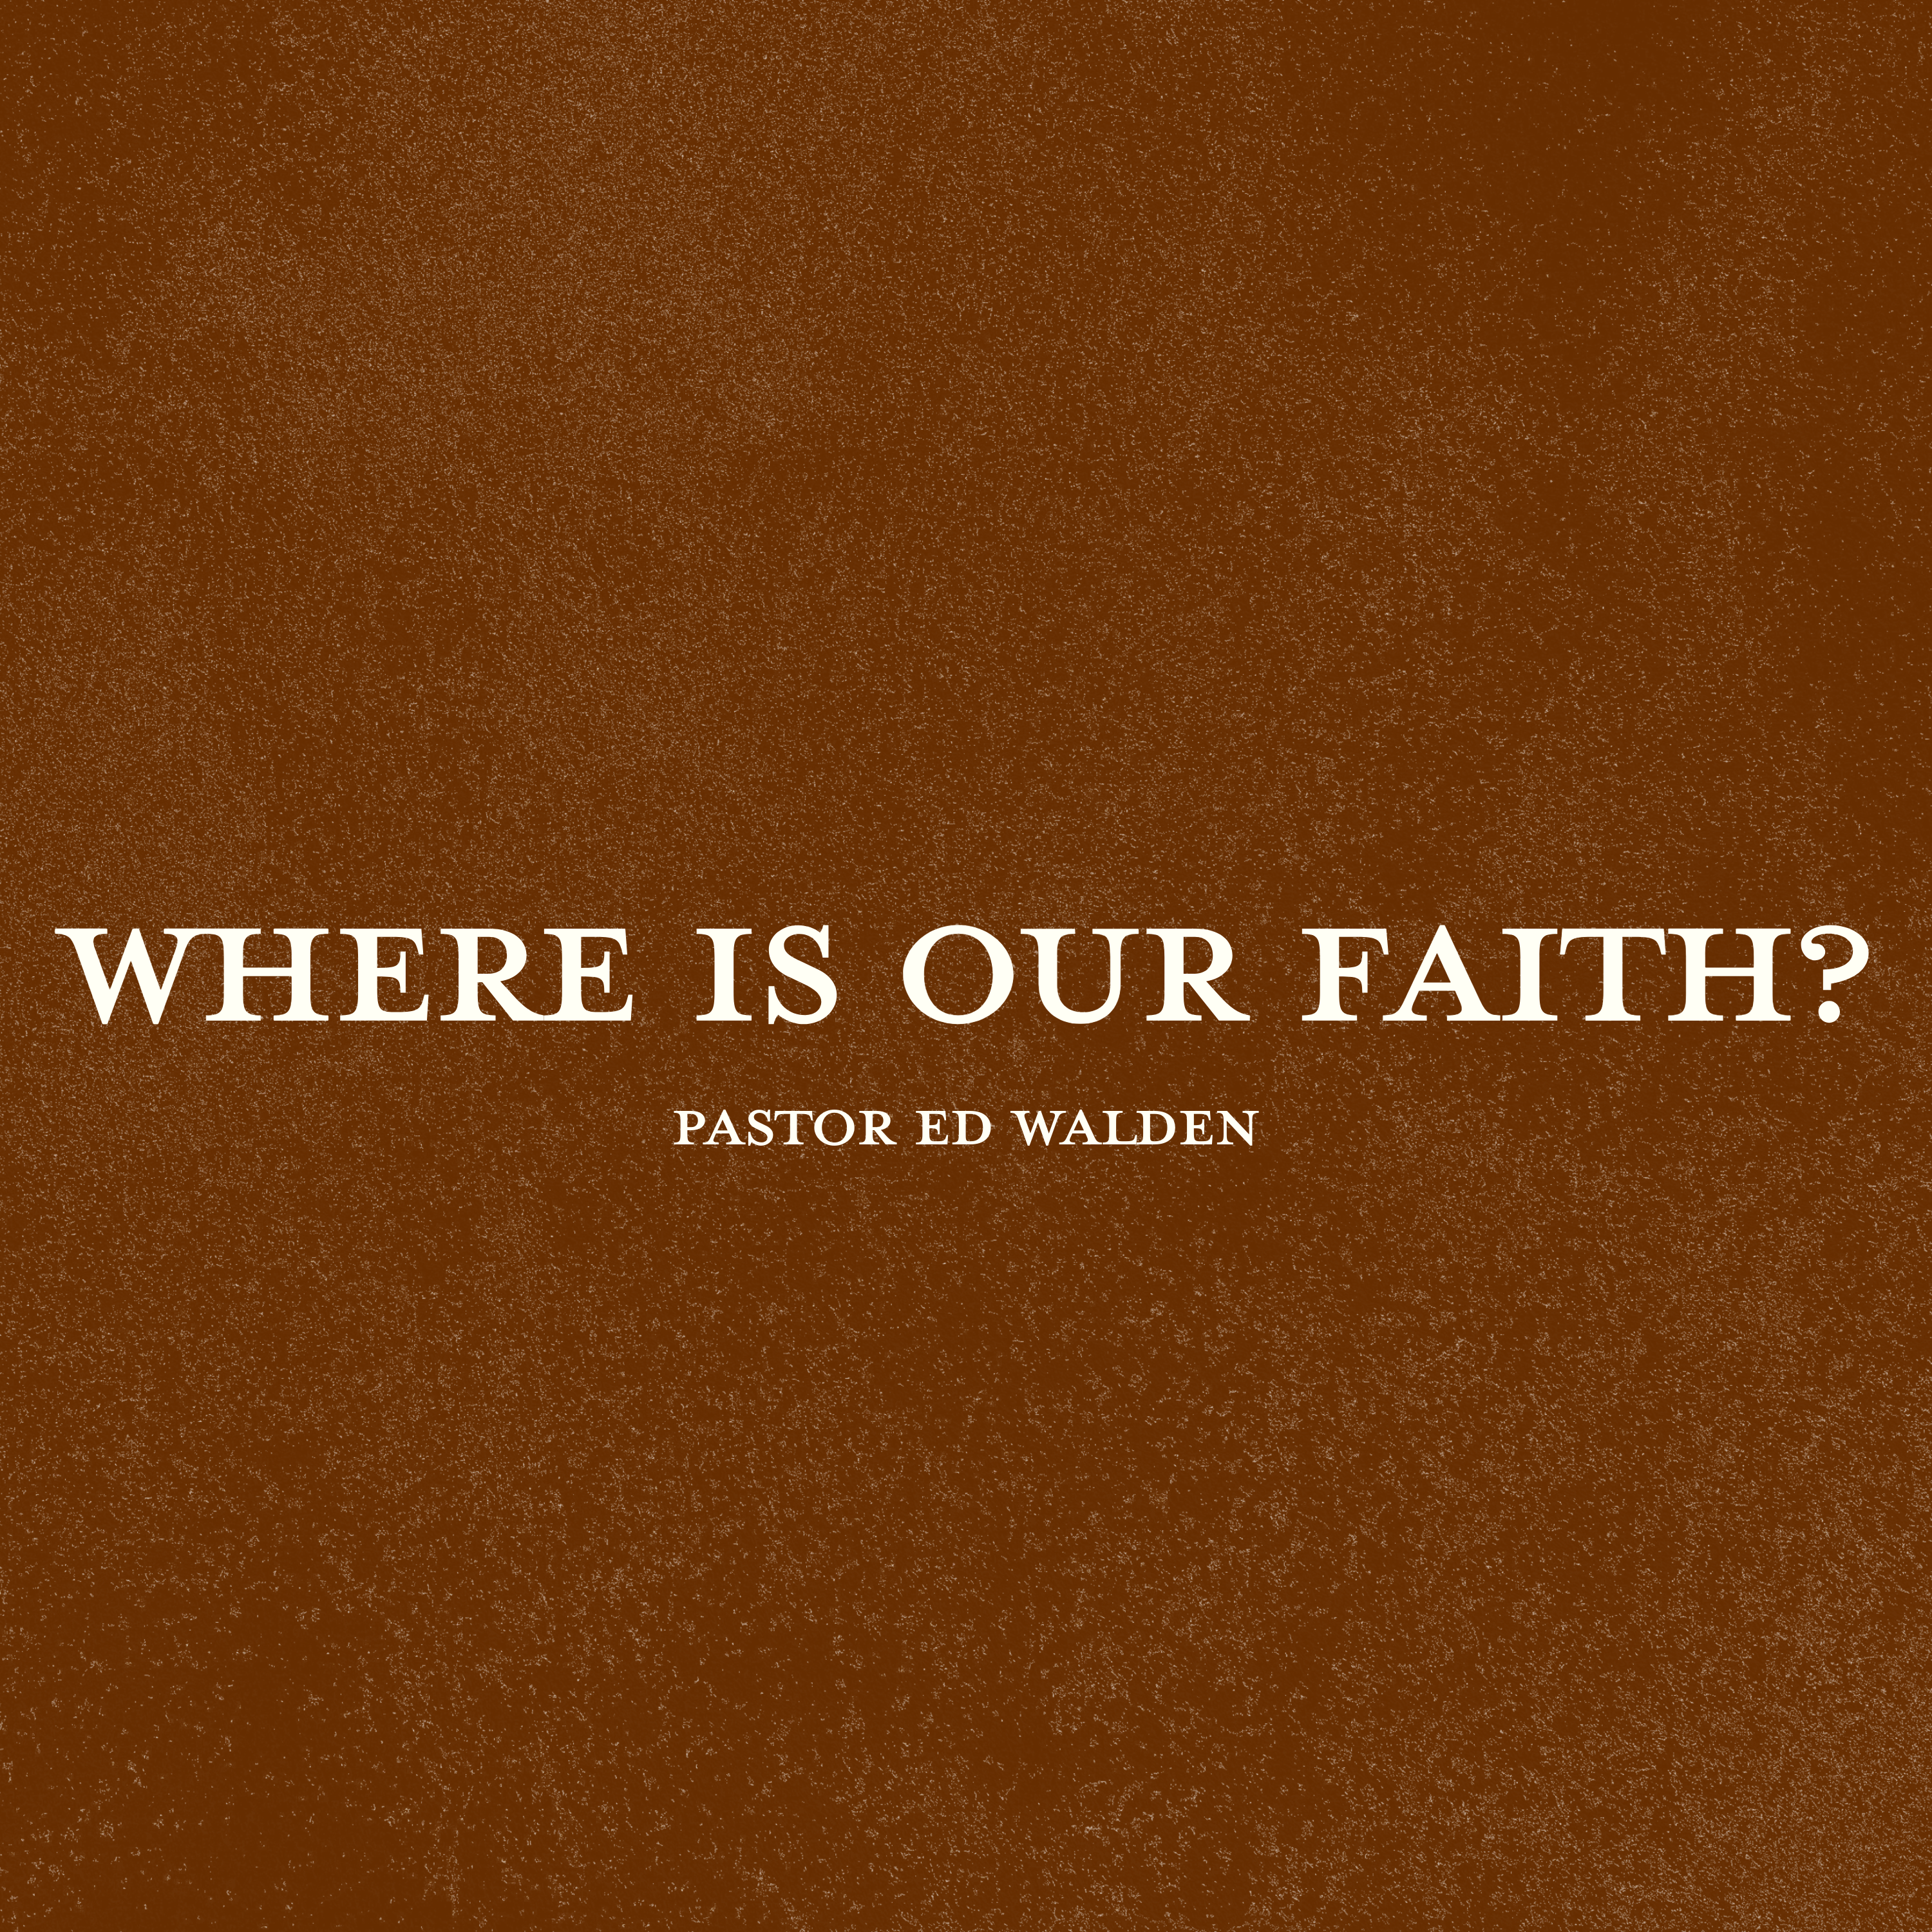 Where Is Our Faith?